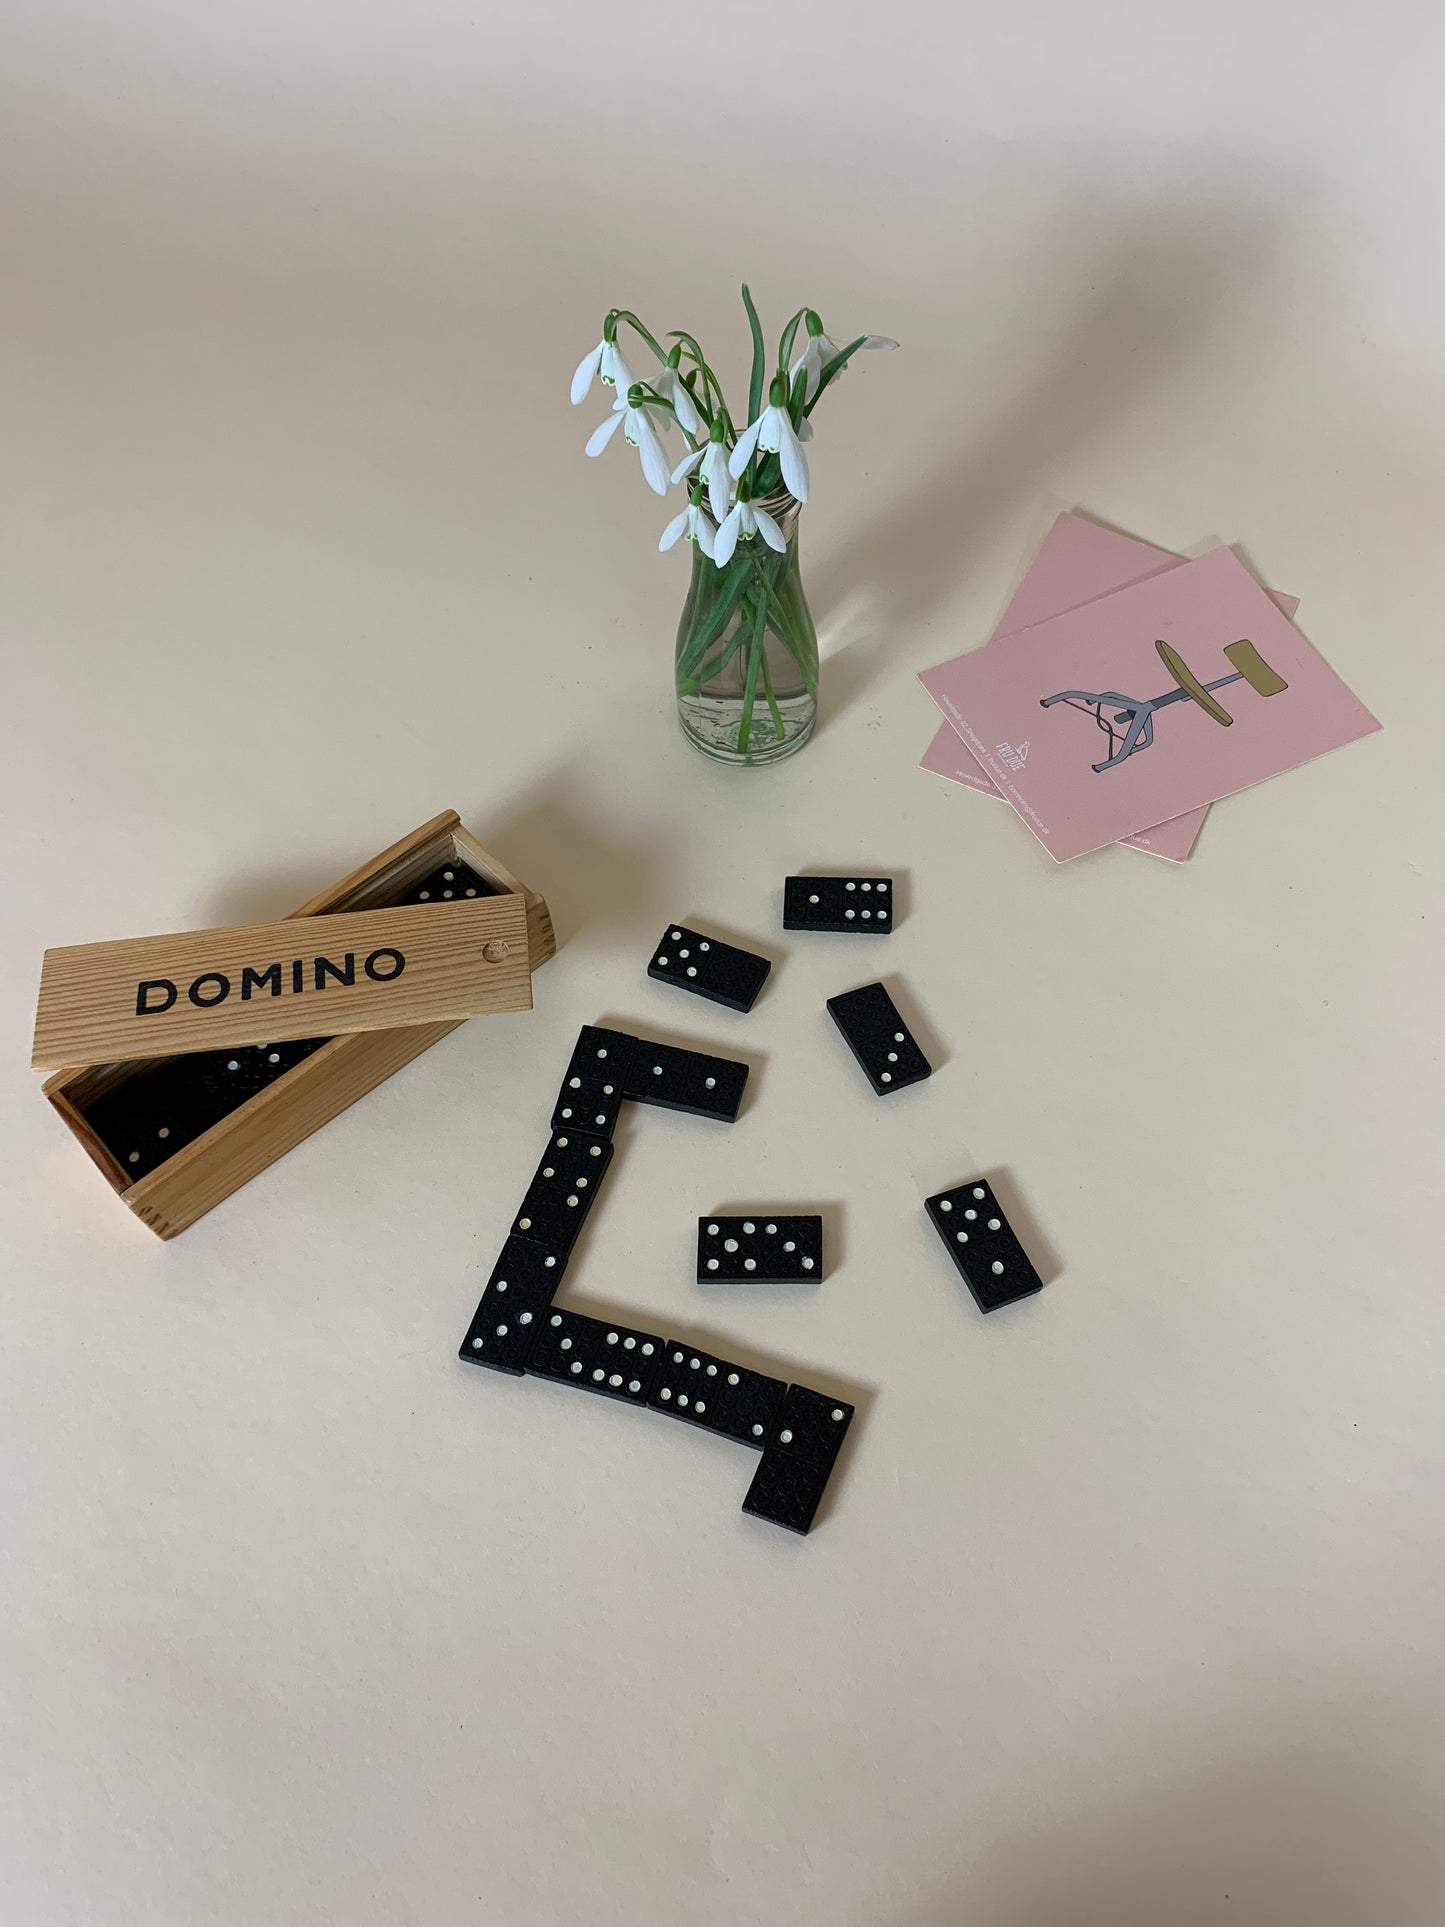 Dominospiel in Holzkiste